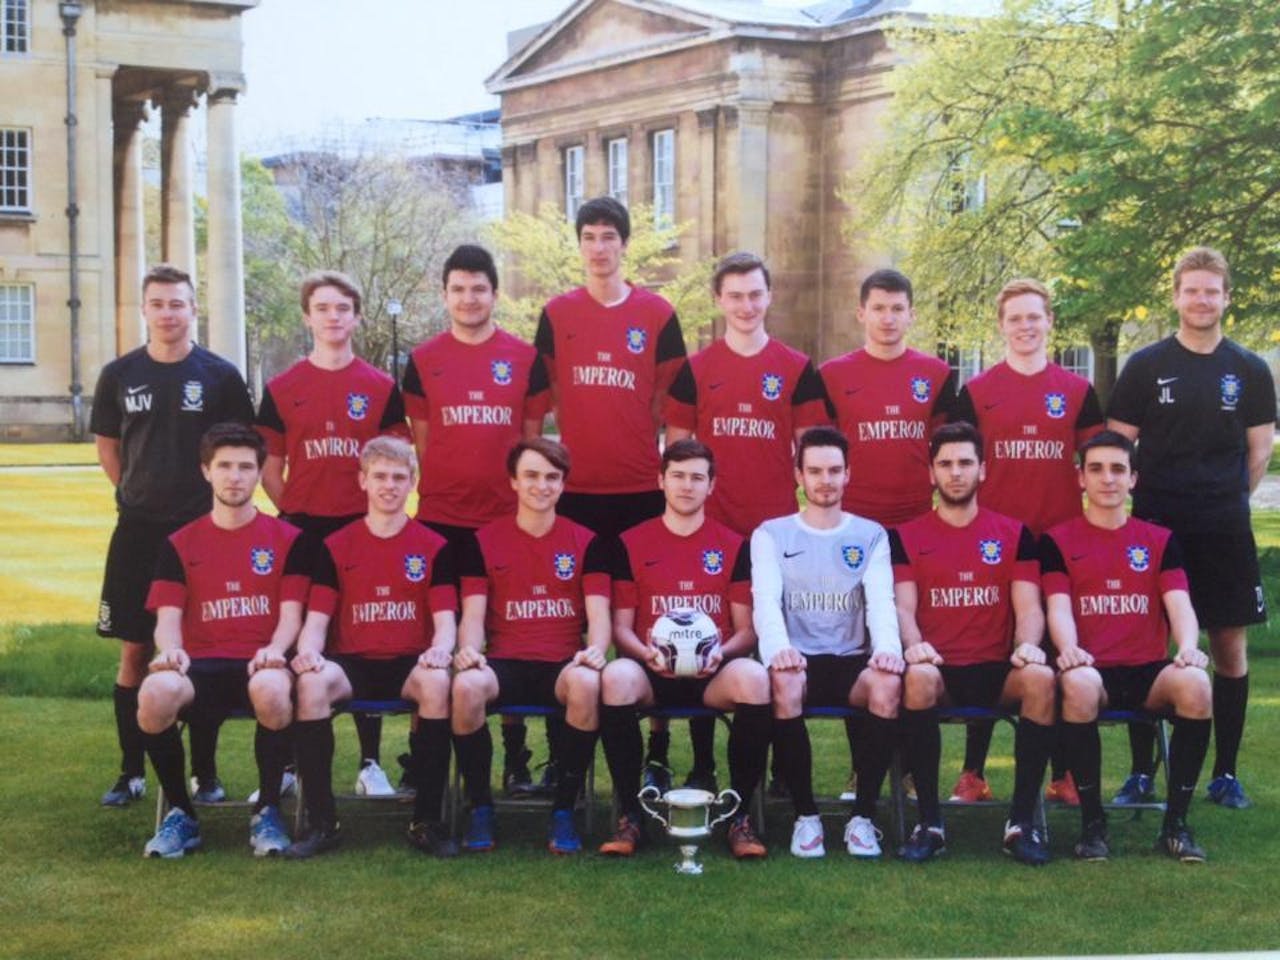 Een voetbalteam in Cambridge poseert voor een foto.